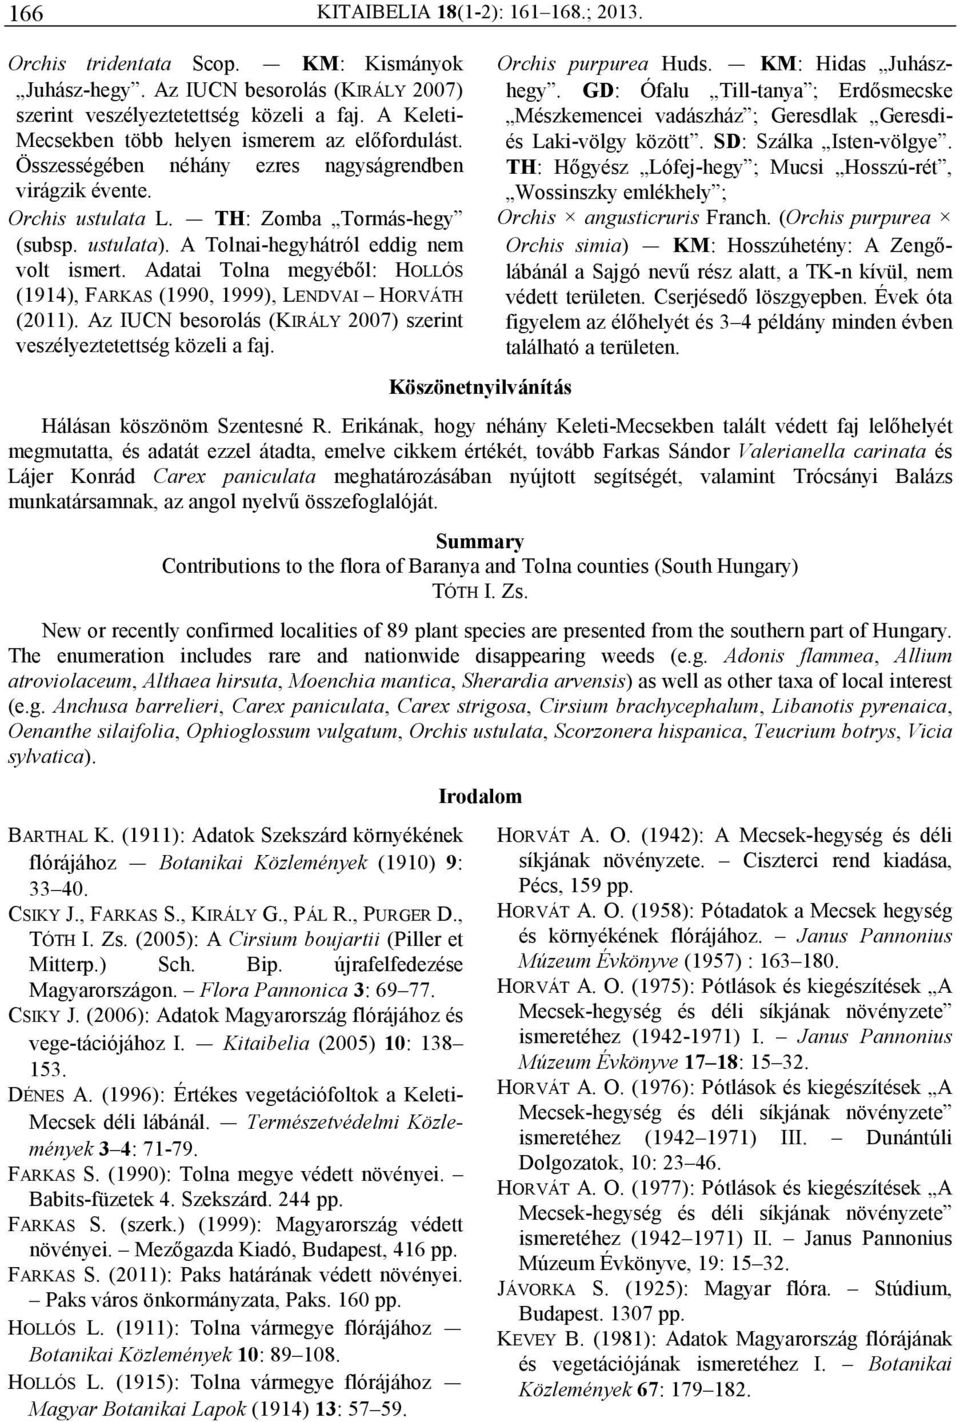 Adatai Tolna megyébıl: HOLLÓS (1914), FARKAS (1990, 1999), LENDVAI HORVÁTH (2011). Köszönetnyilvánítás Orchis purpurea Huds. KM: Hidas Juhászhegy.